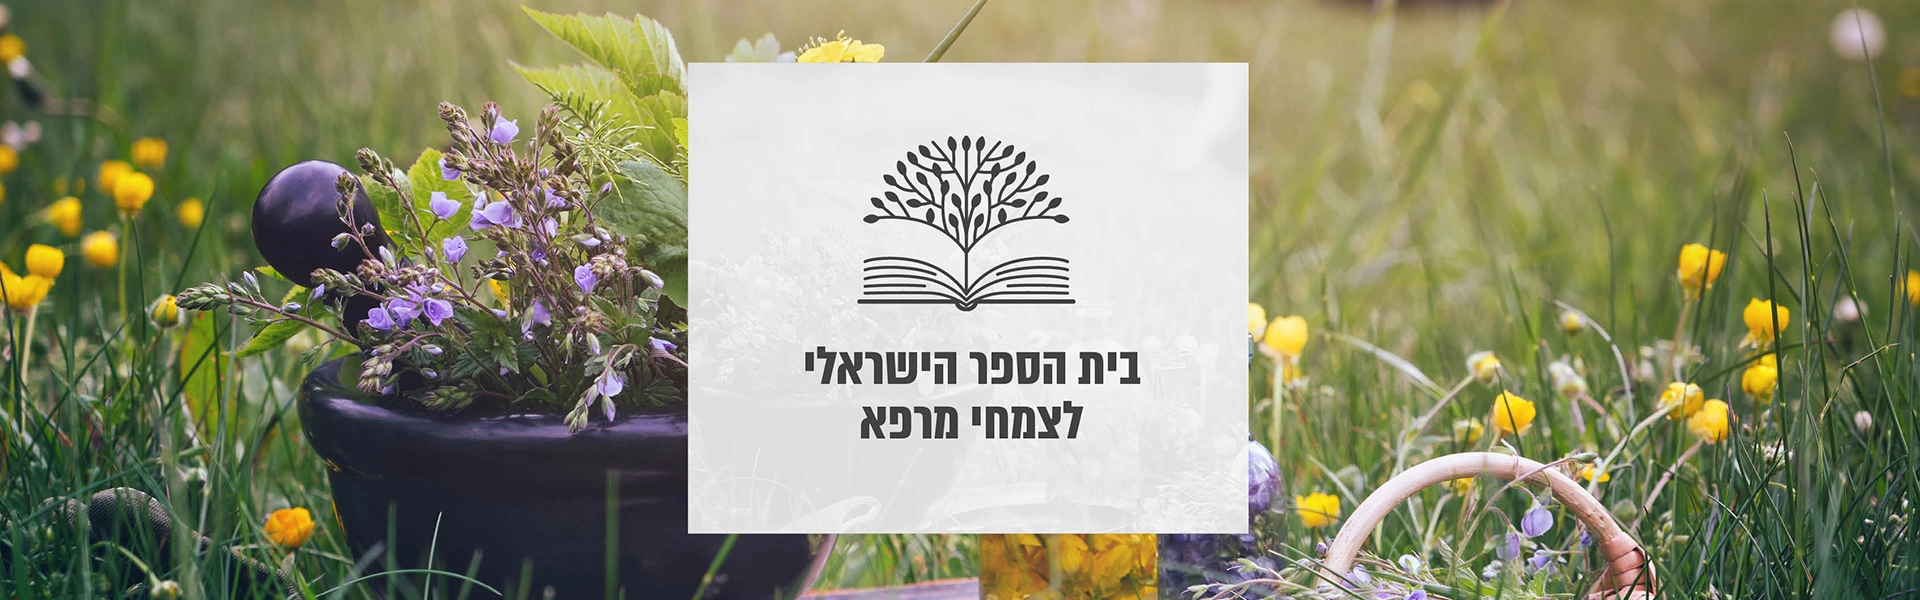 בית הספר הישראלי לצמחי מרפא